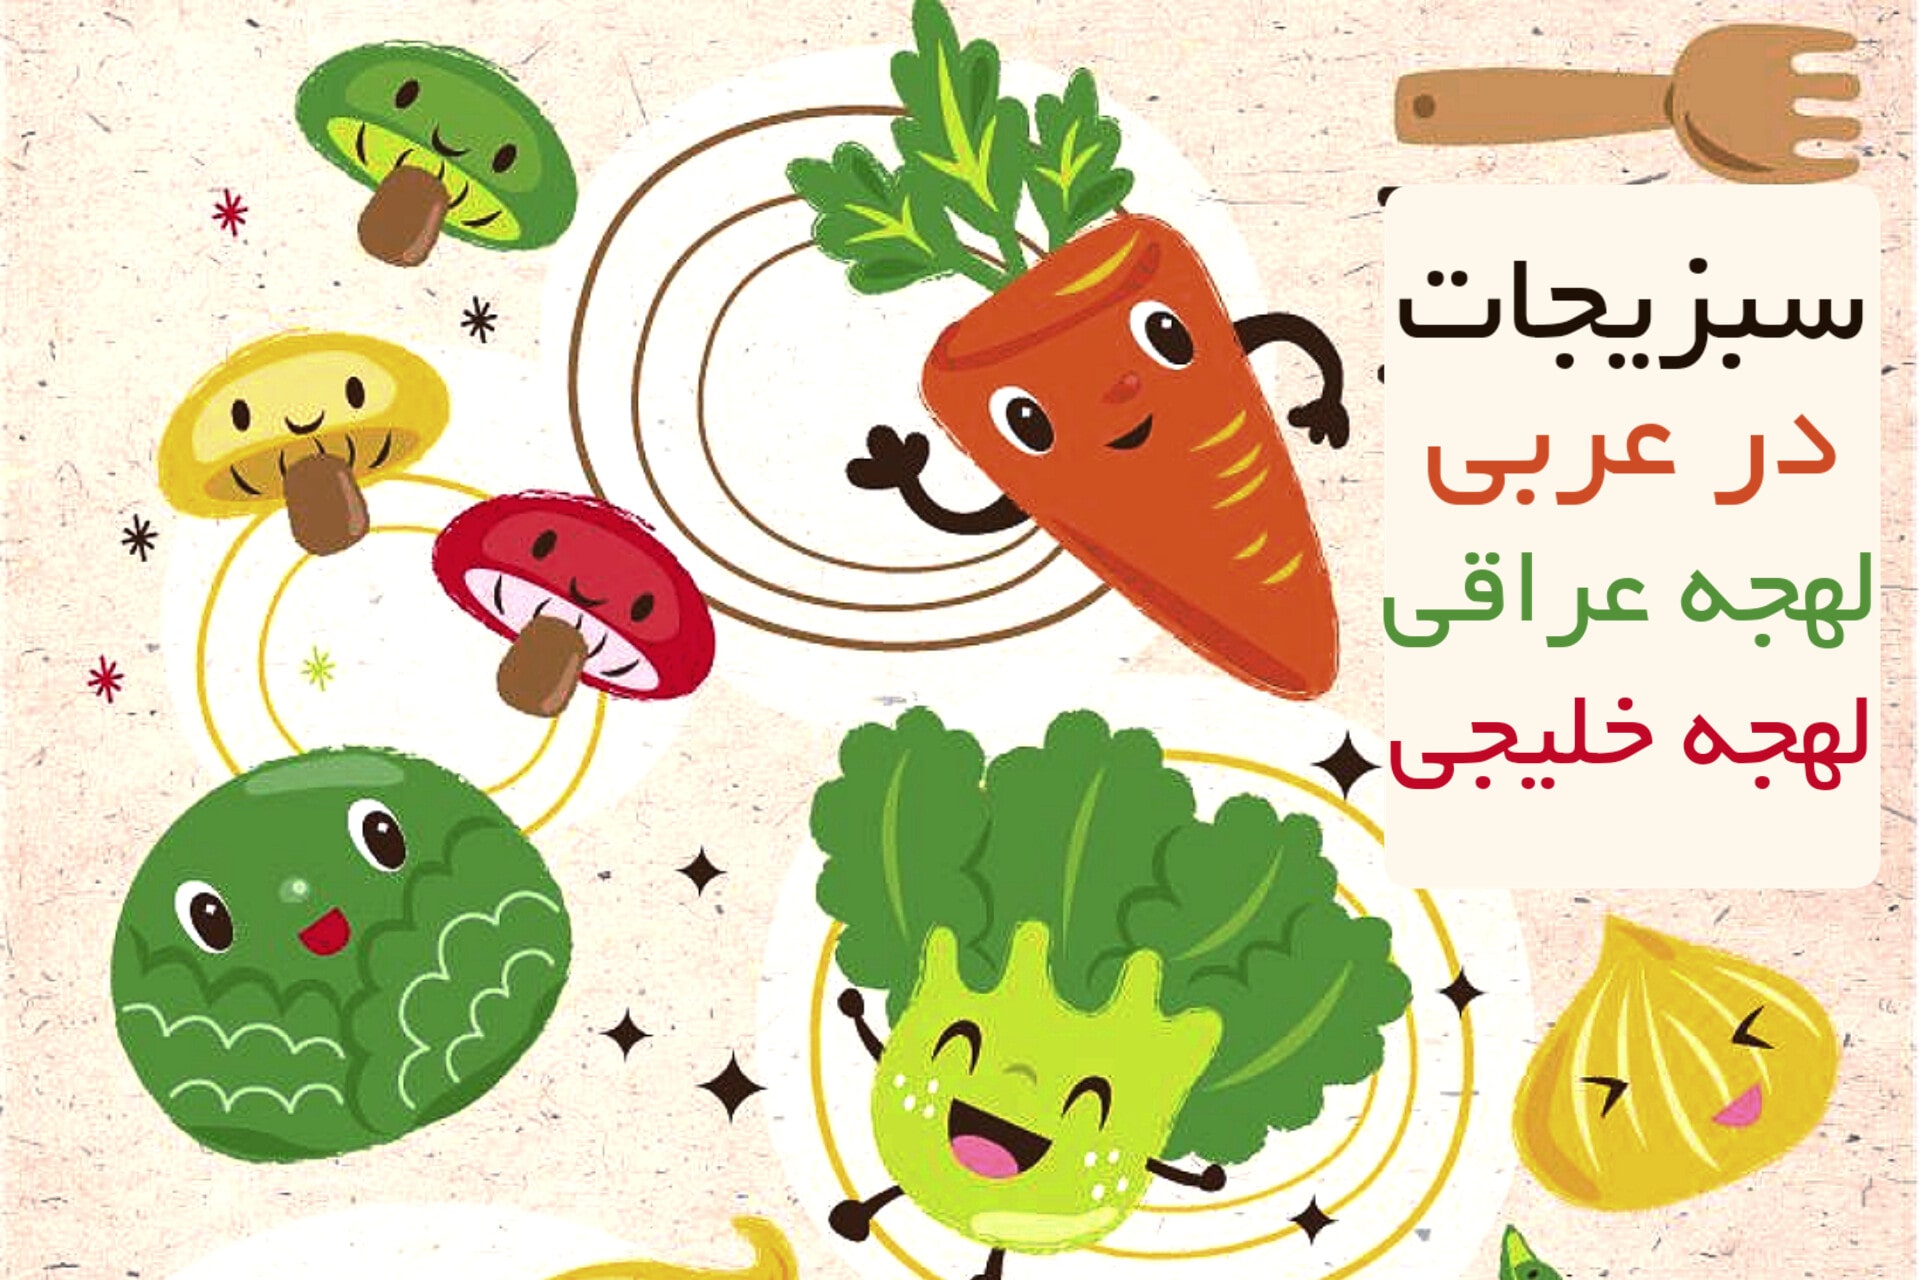 سبزیجات در زبان عربی لهجه عراقی و خلیجی